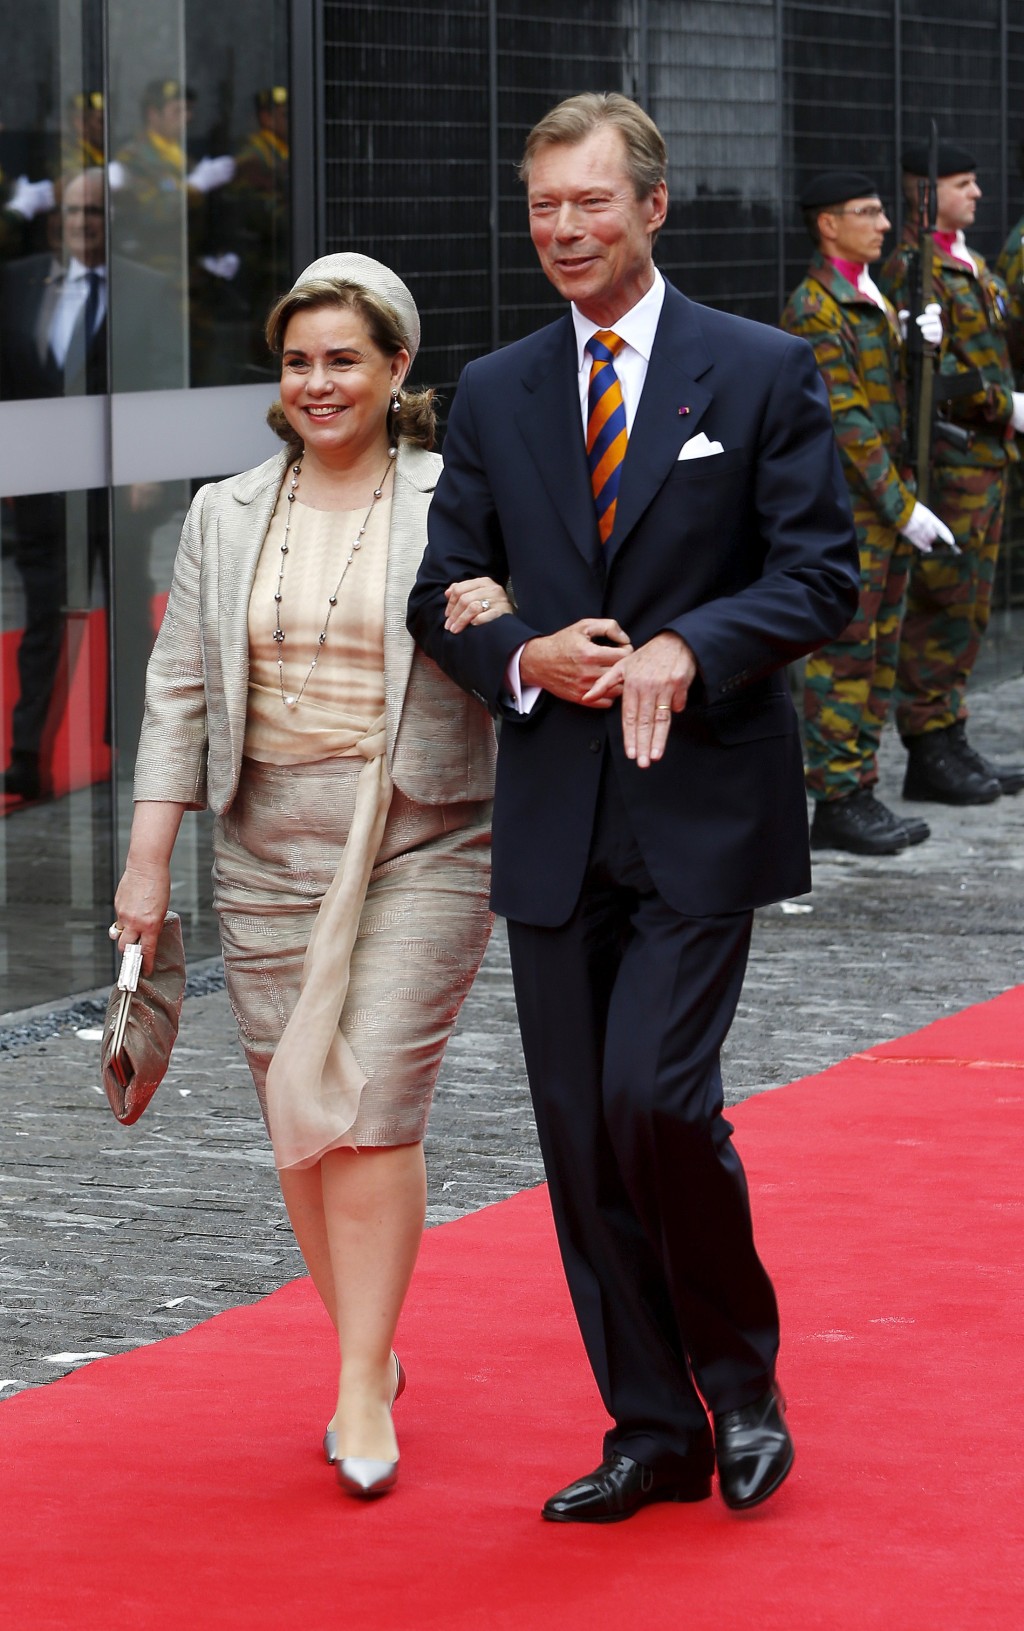 卢森堡大公亨利（Henri）与夫人玛丽亚特丽莎（Maria Teresa）在比利时滑铁卢出席滑铁卢战役200周年纪念活动。 路透社